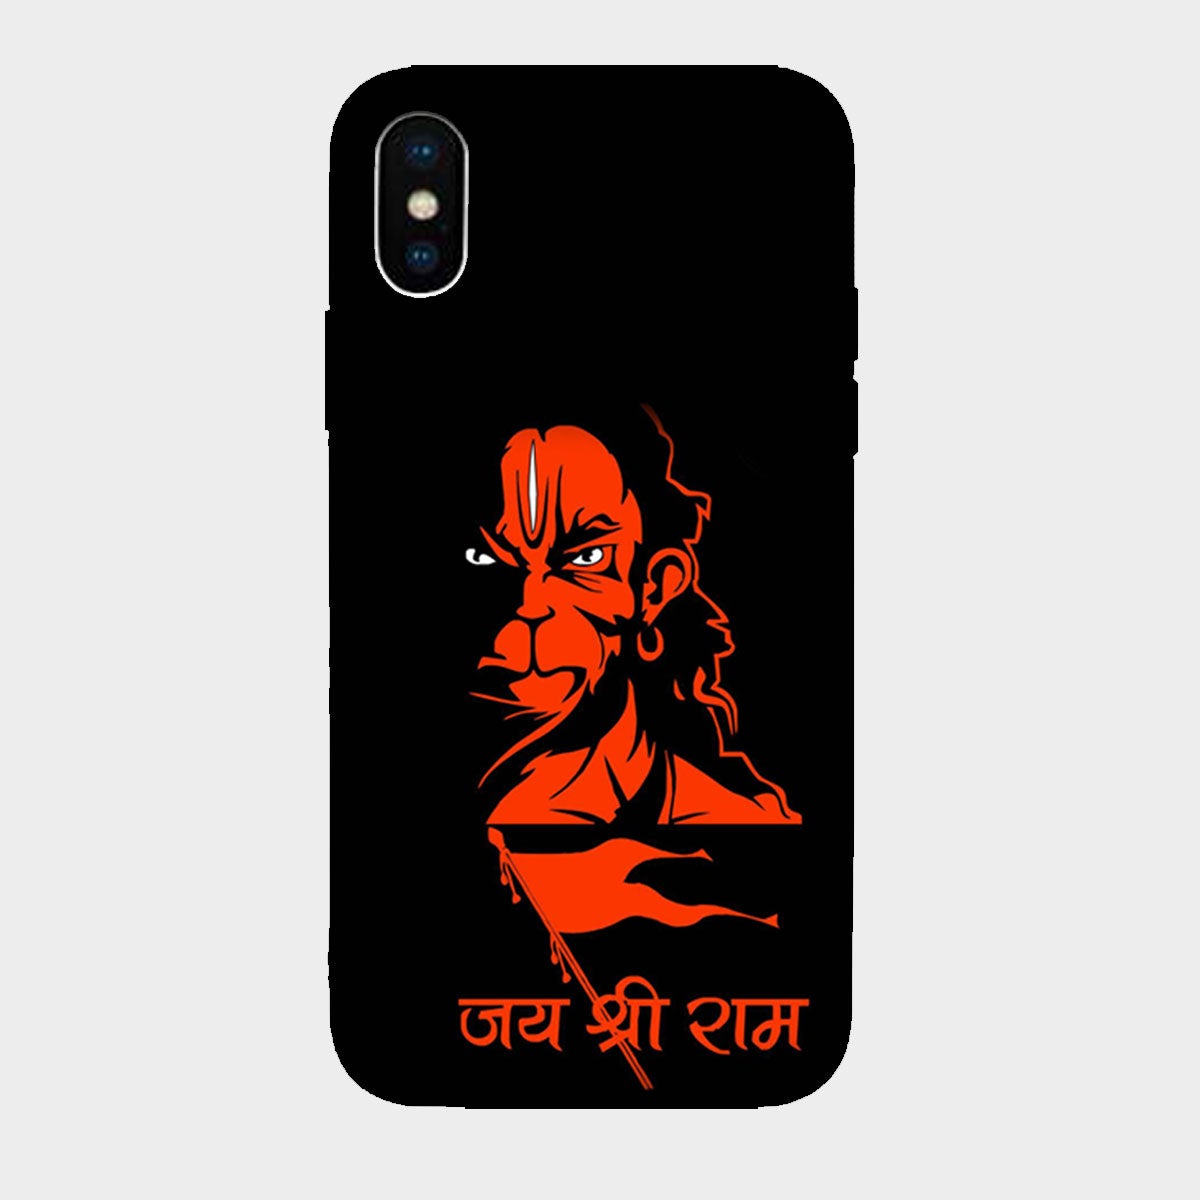 Jai Shree Ram - Hanuman - Mobile Phone Cover - Hard Case – BrahmaBull